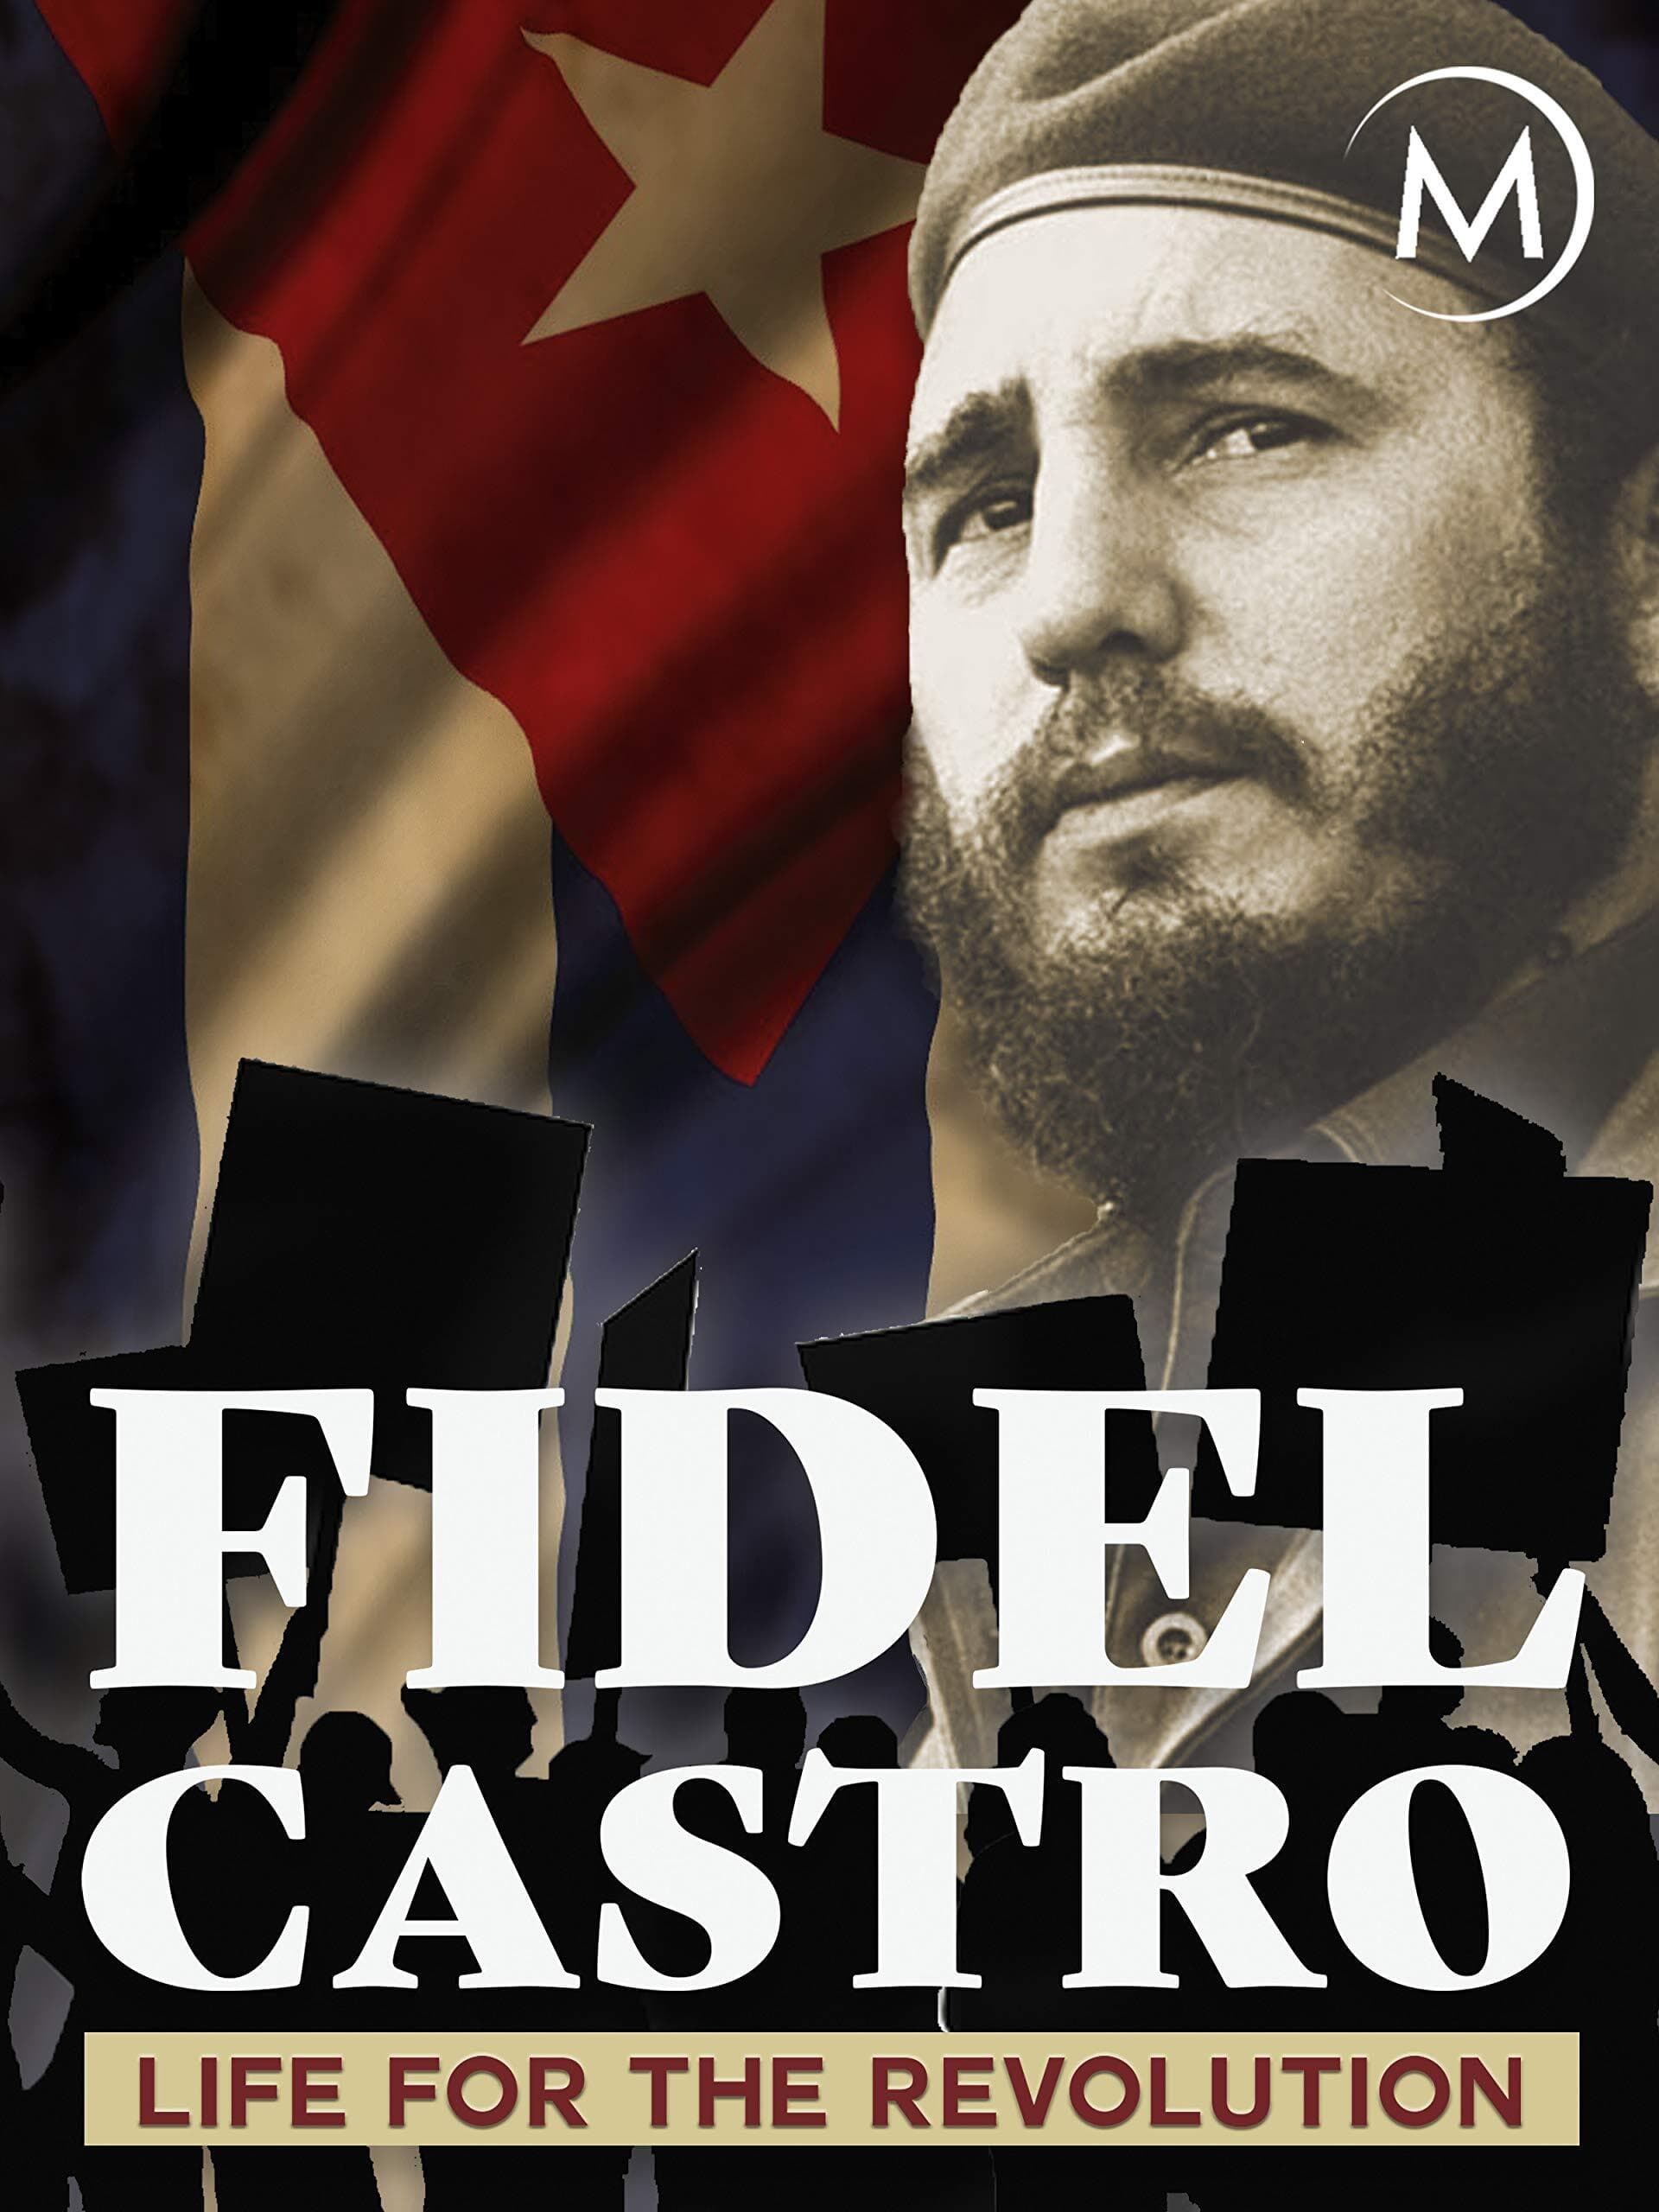 Fidel Castro: Life for the Revolution